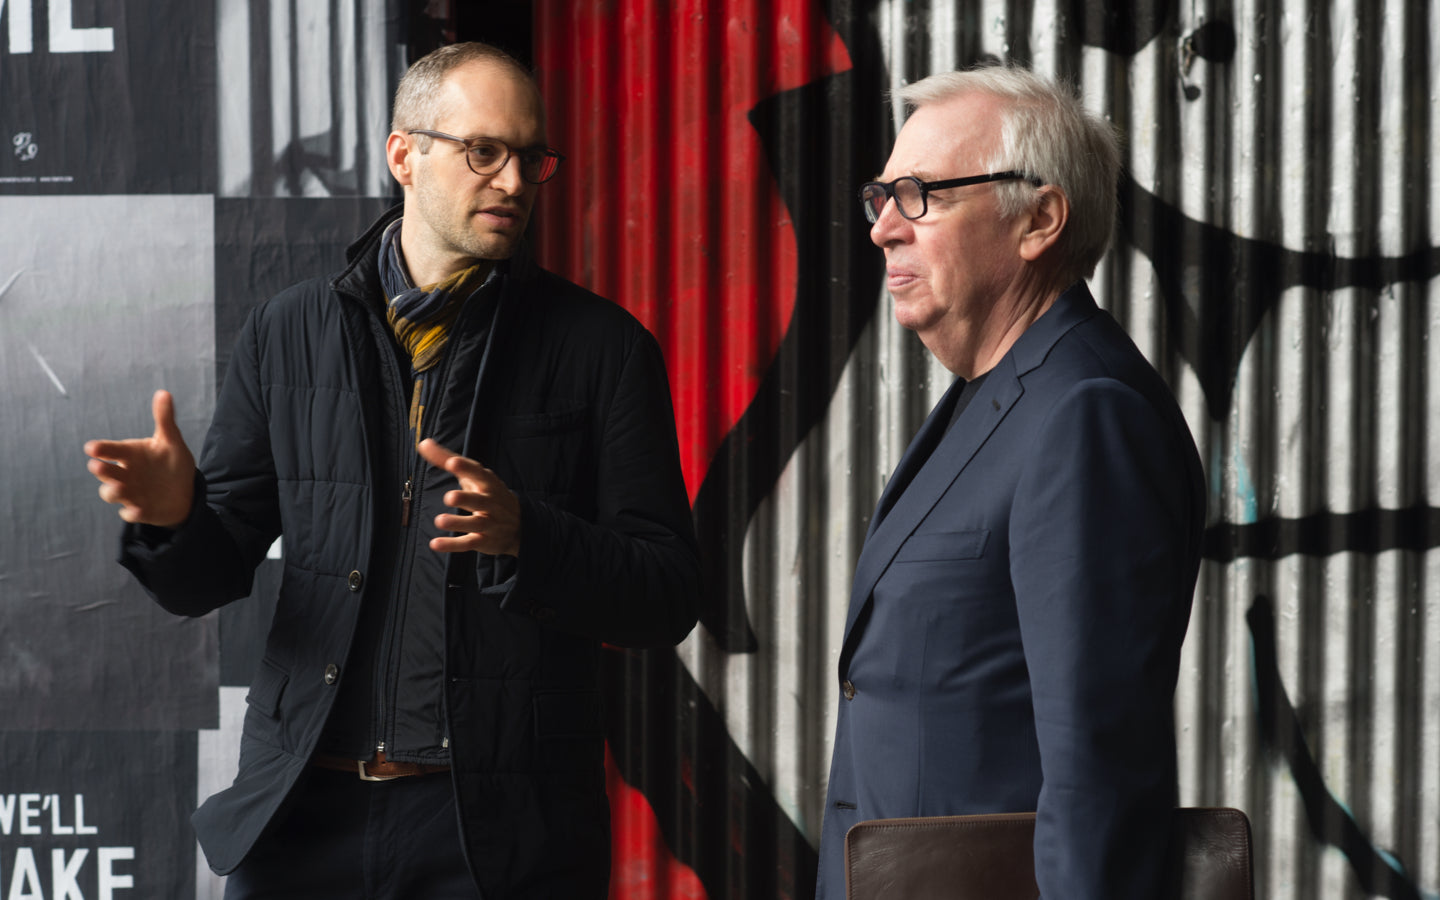 2016–2017 Rolex Mentor and Protégé Arts Initiative architecture mentor Sir David Chipperfield and his protégé Simon Kretz